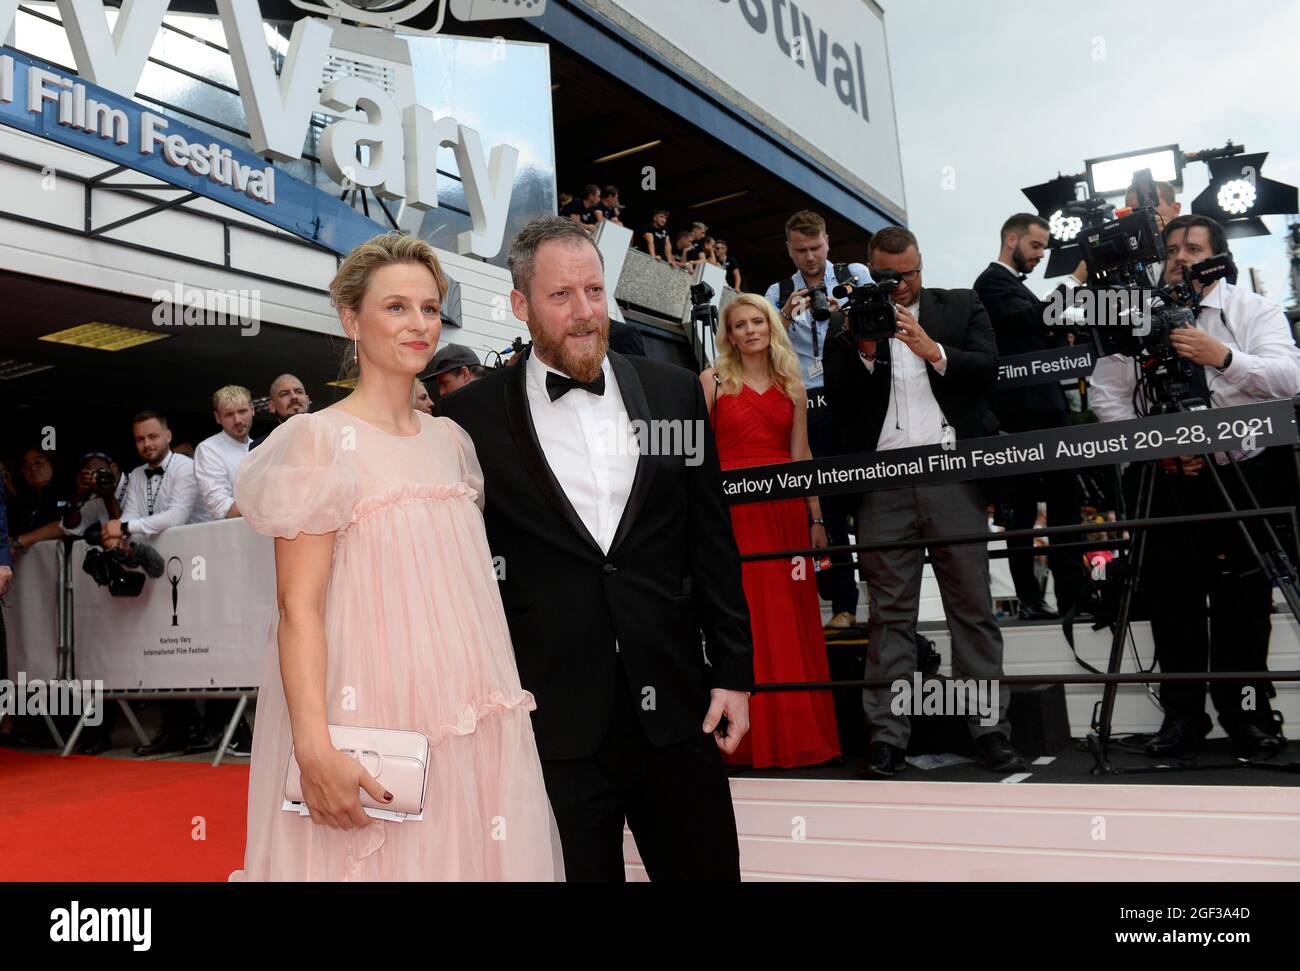 Krystof Mucha, directeur général du Festival, et sa femme arrivent au 55e Festival international du film de Karlovy Vary (KVIFF) à Karlovy Vary, République tchèque Banque D'Images